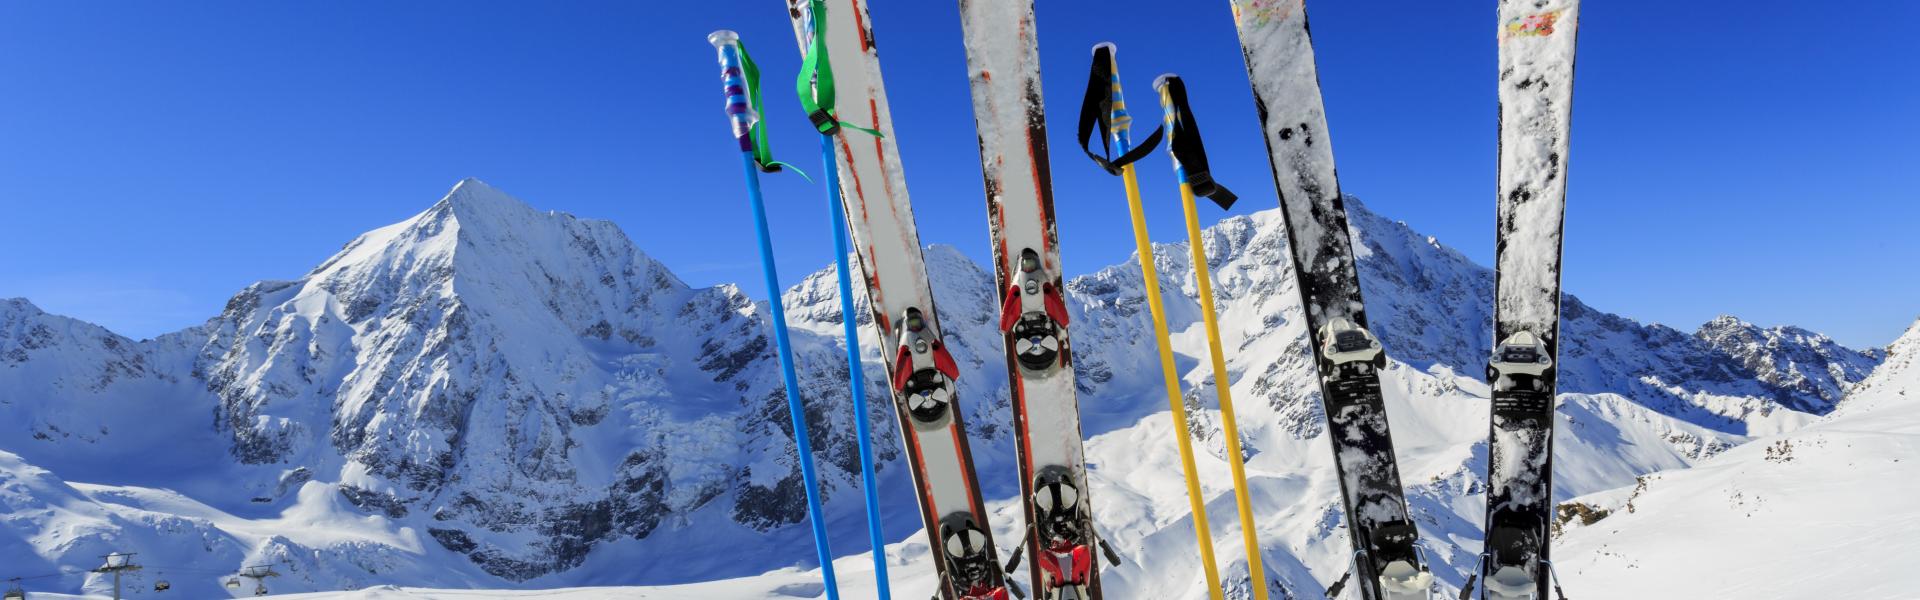 Beliebte Skigebiete für einen Skiurlaub in Europa - HomeToGo